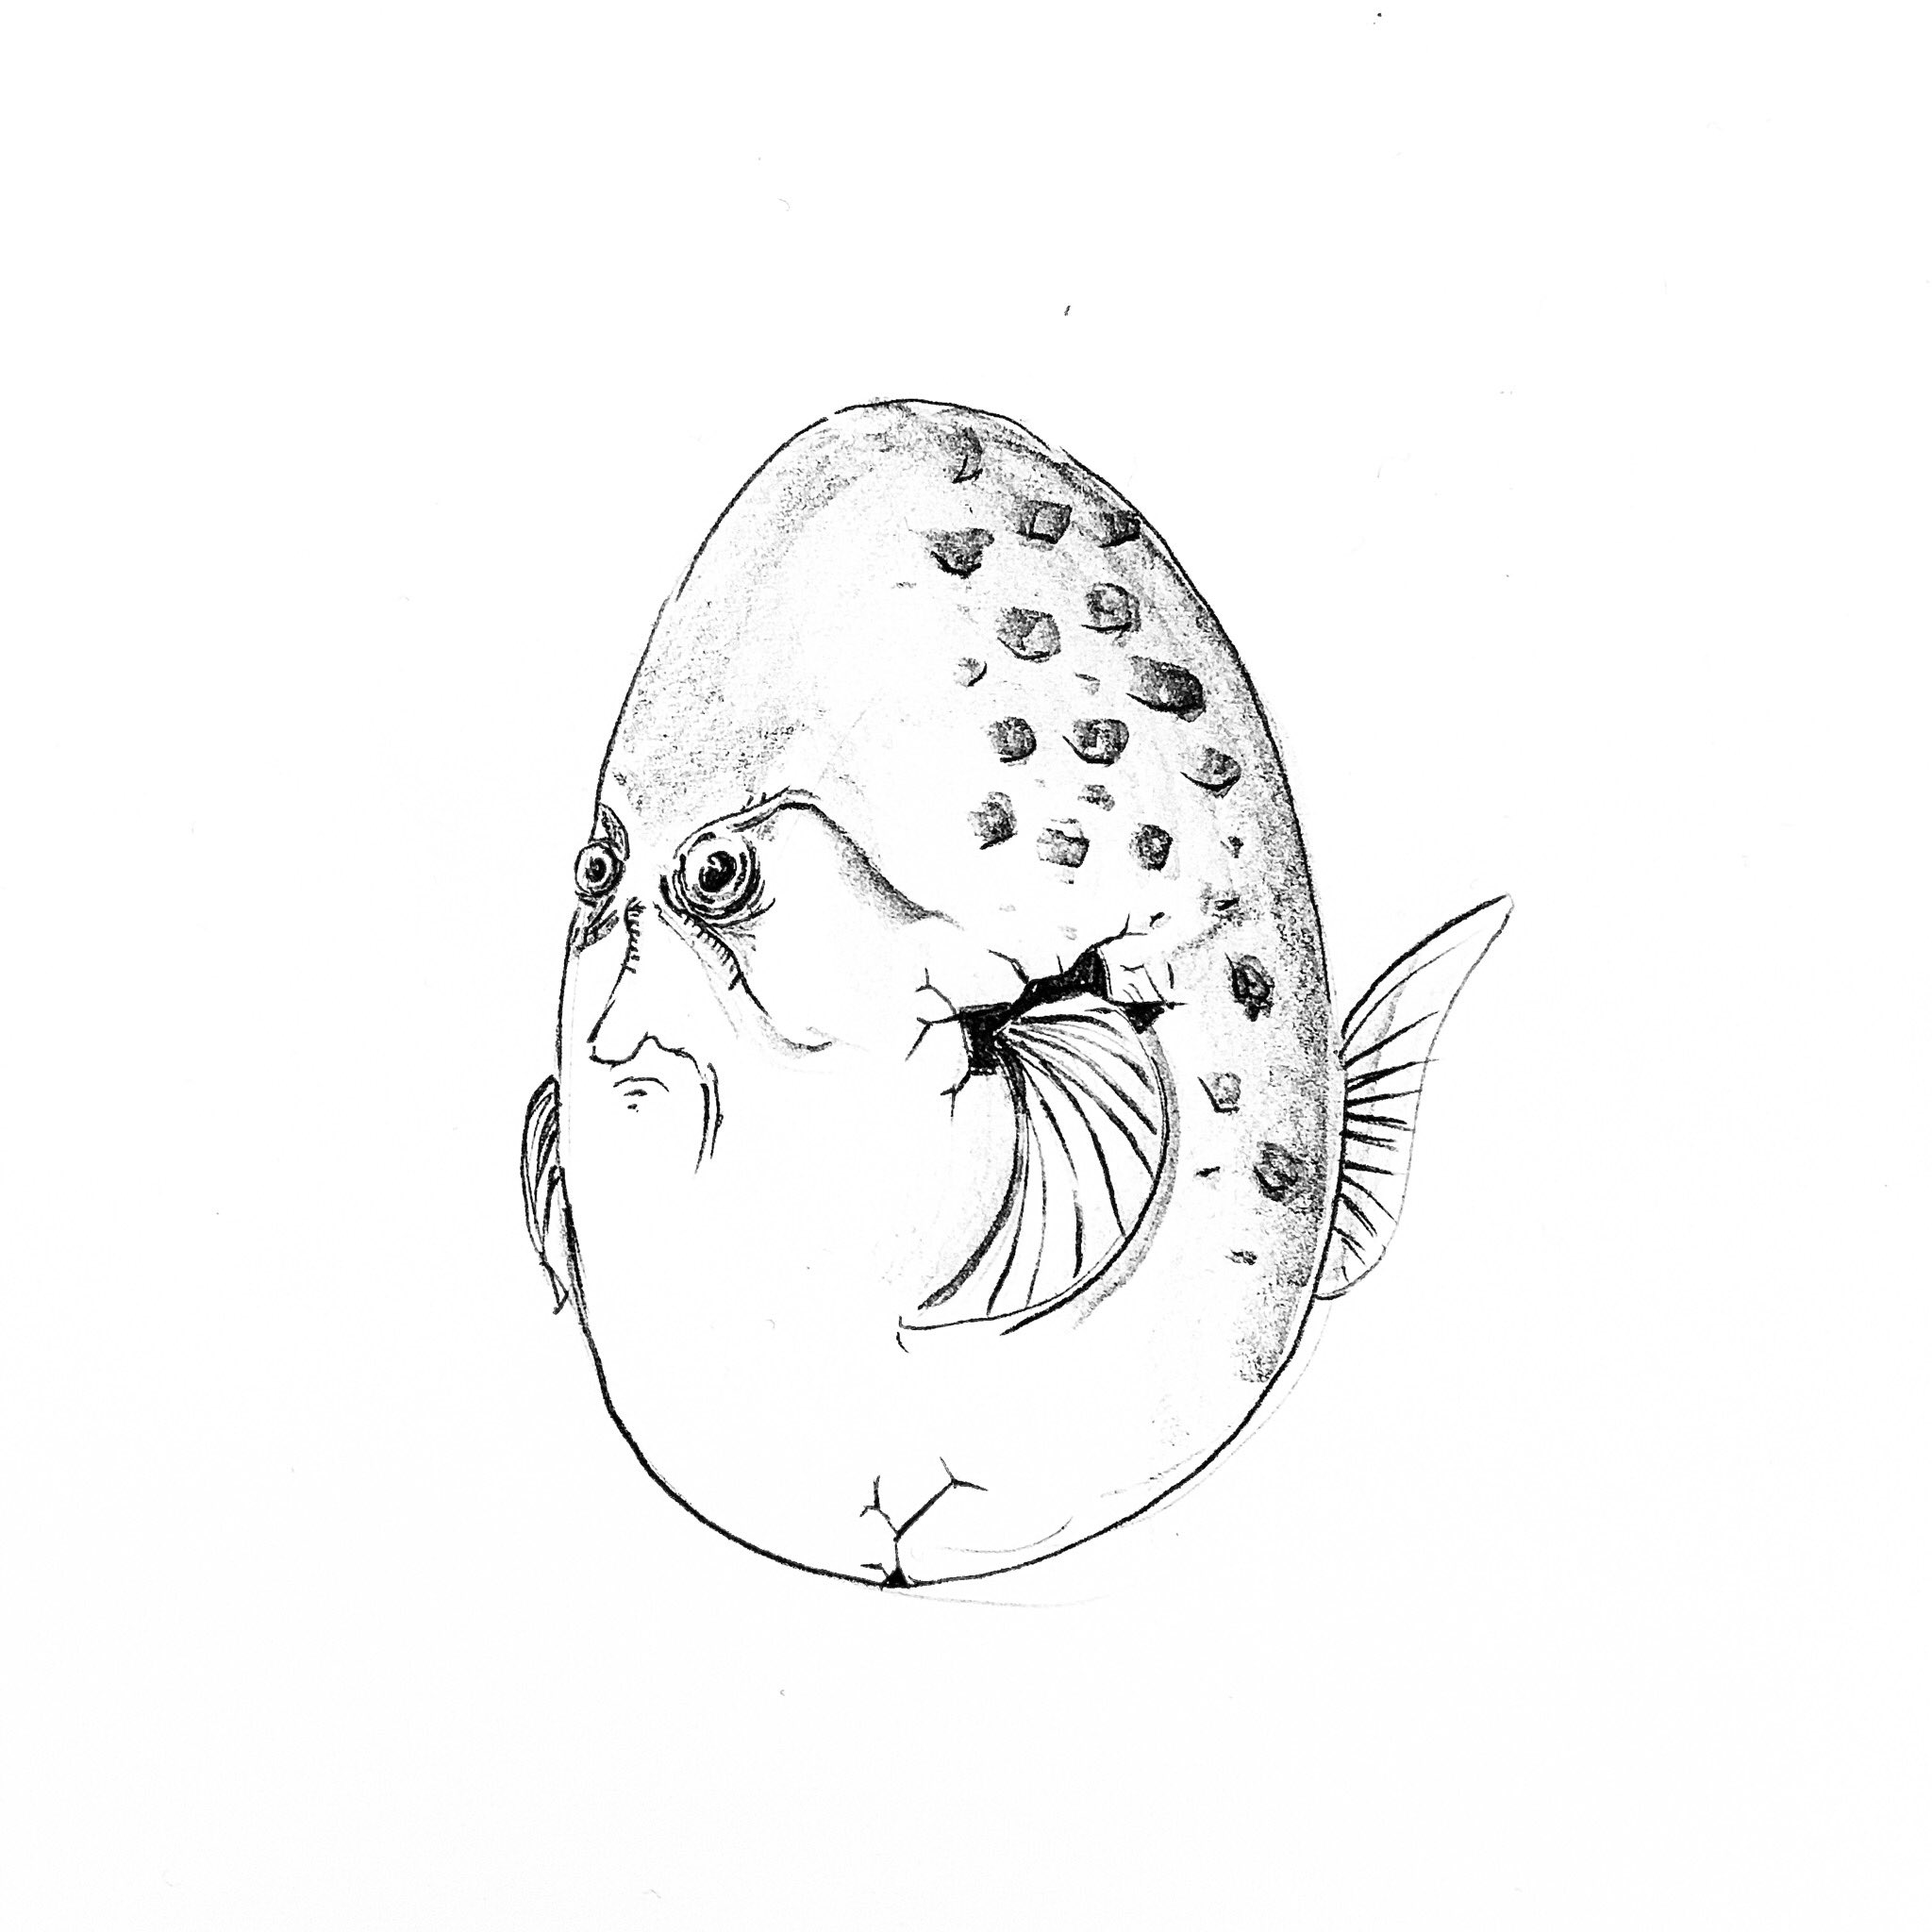 よしむし タマゴサカナ ちょっと怒りながら泳いでいる タマゴサカナ 魚イラスト タマゴイラスト 線画 モノクロアート モノクロイラスト シュールなイラスト T Co Egi8bmyq4v Twitter